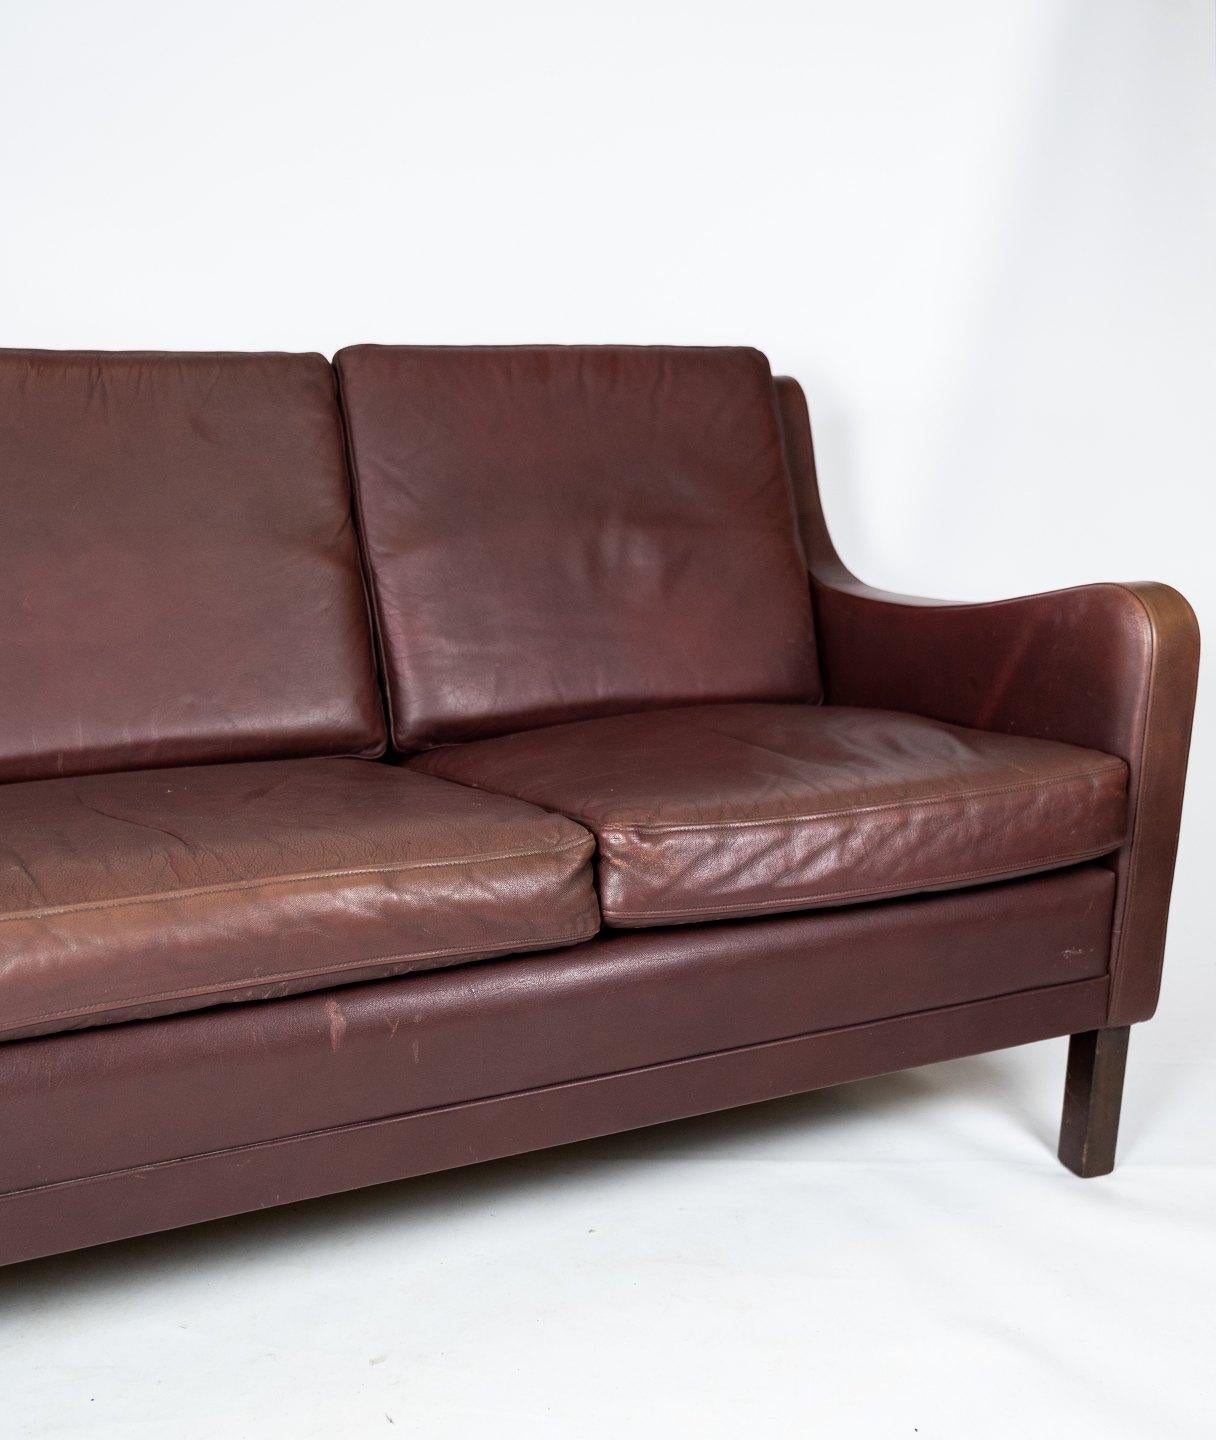 1960s leather sofa